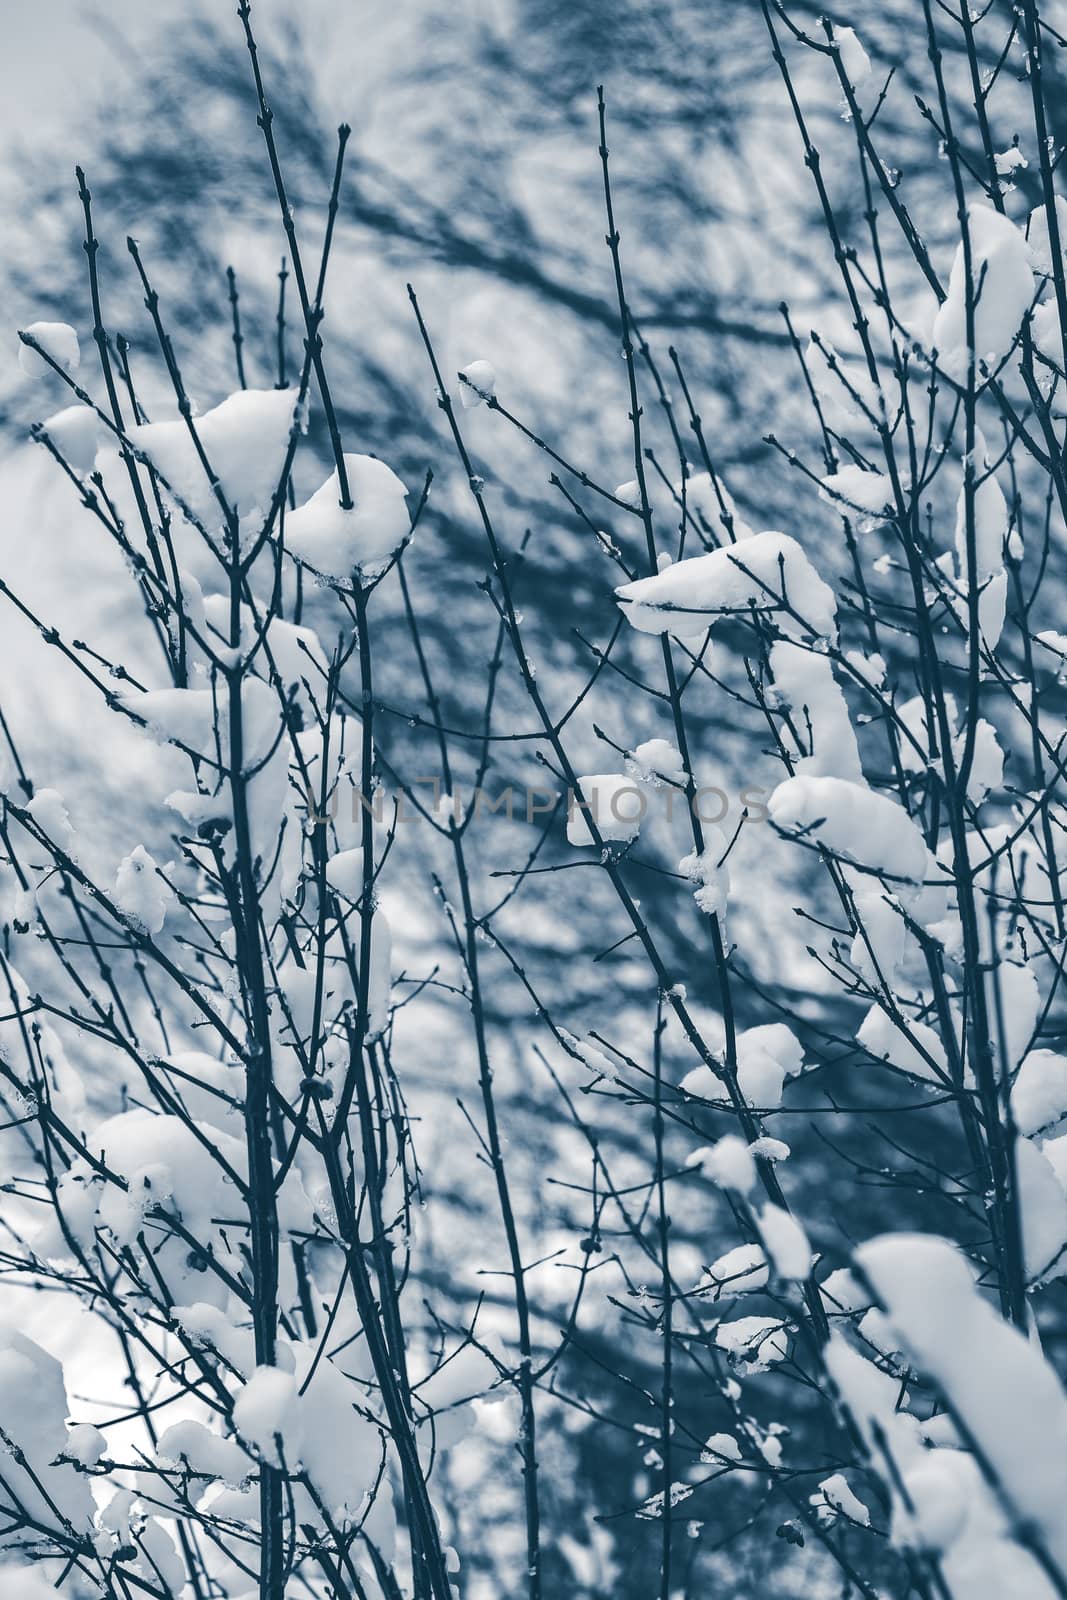 Snowy winter landscape by sengnsp